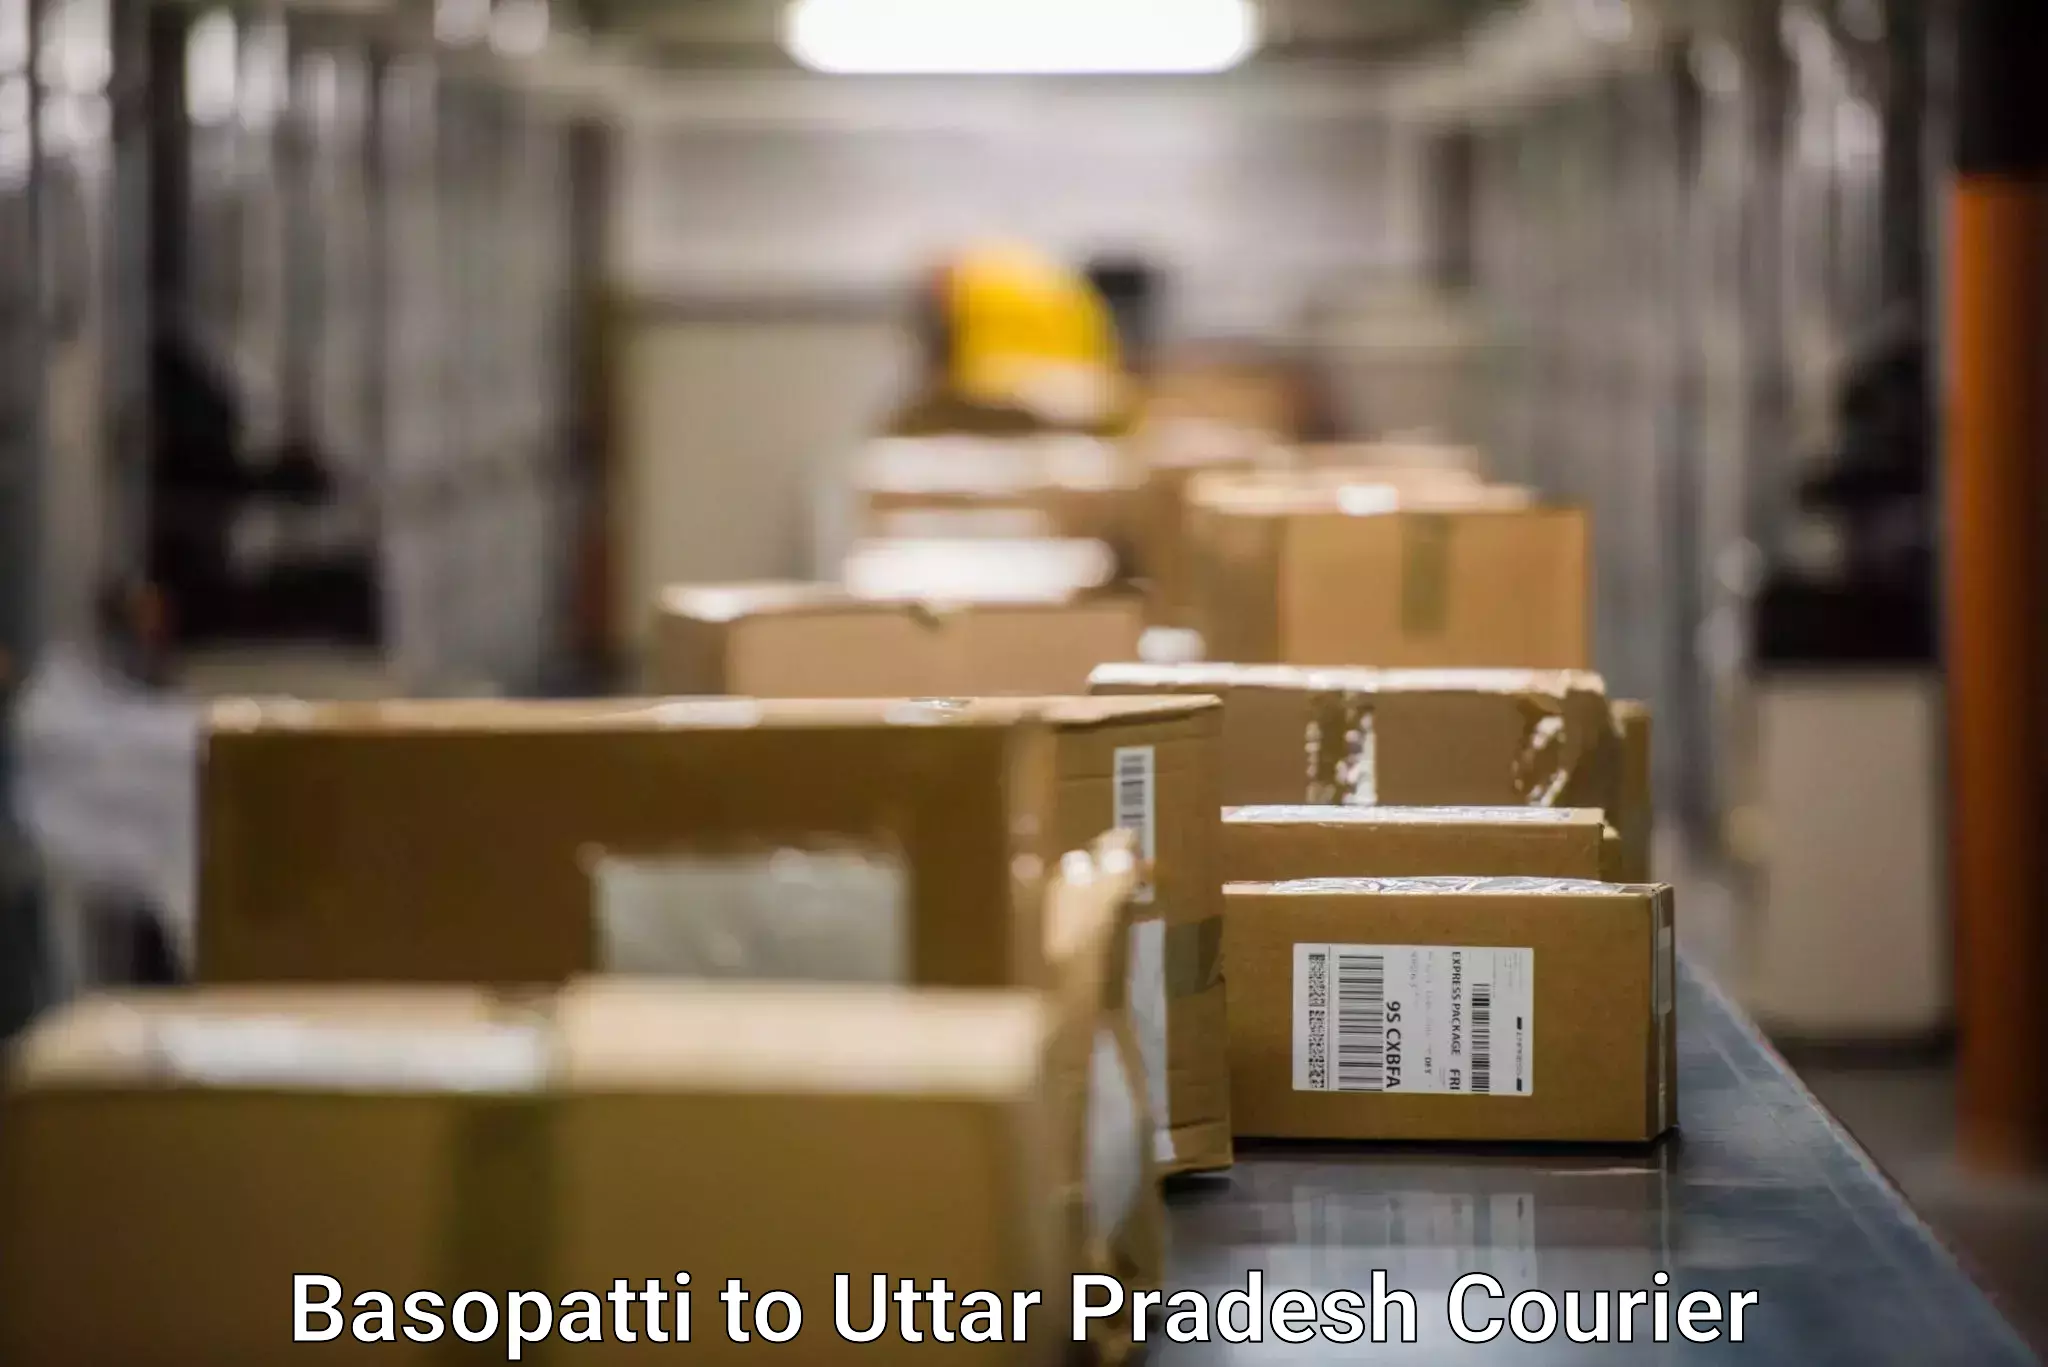 Courier service comparison Basopatti to Uttar Pradesh